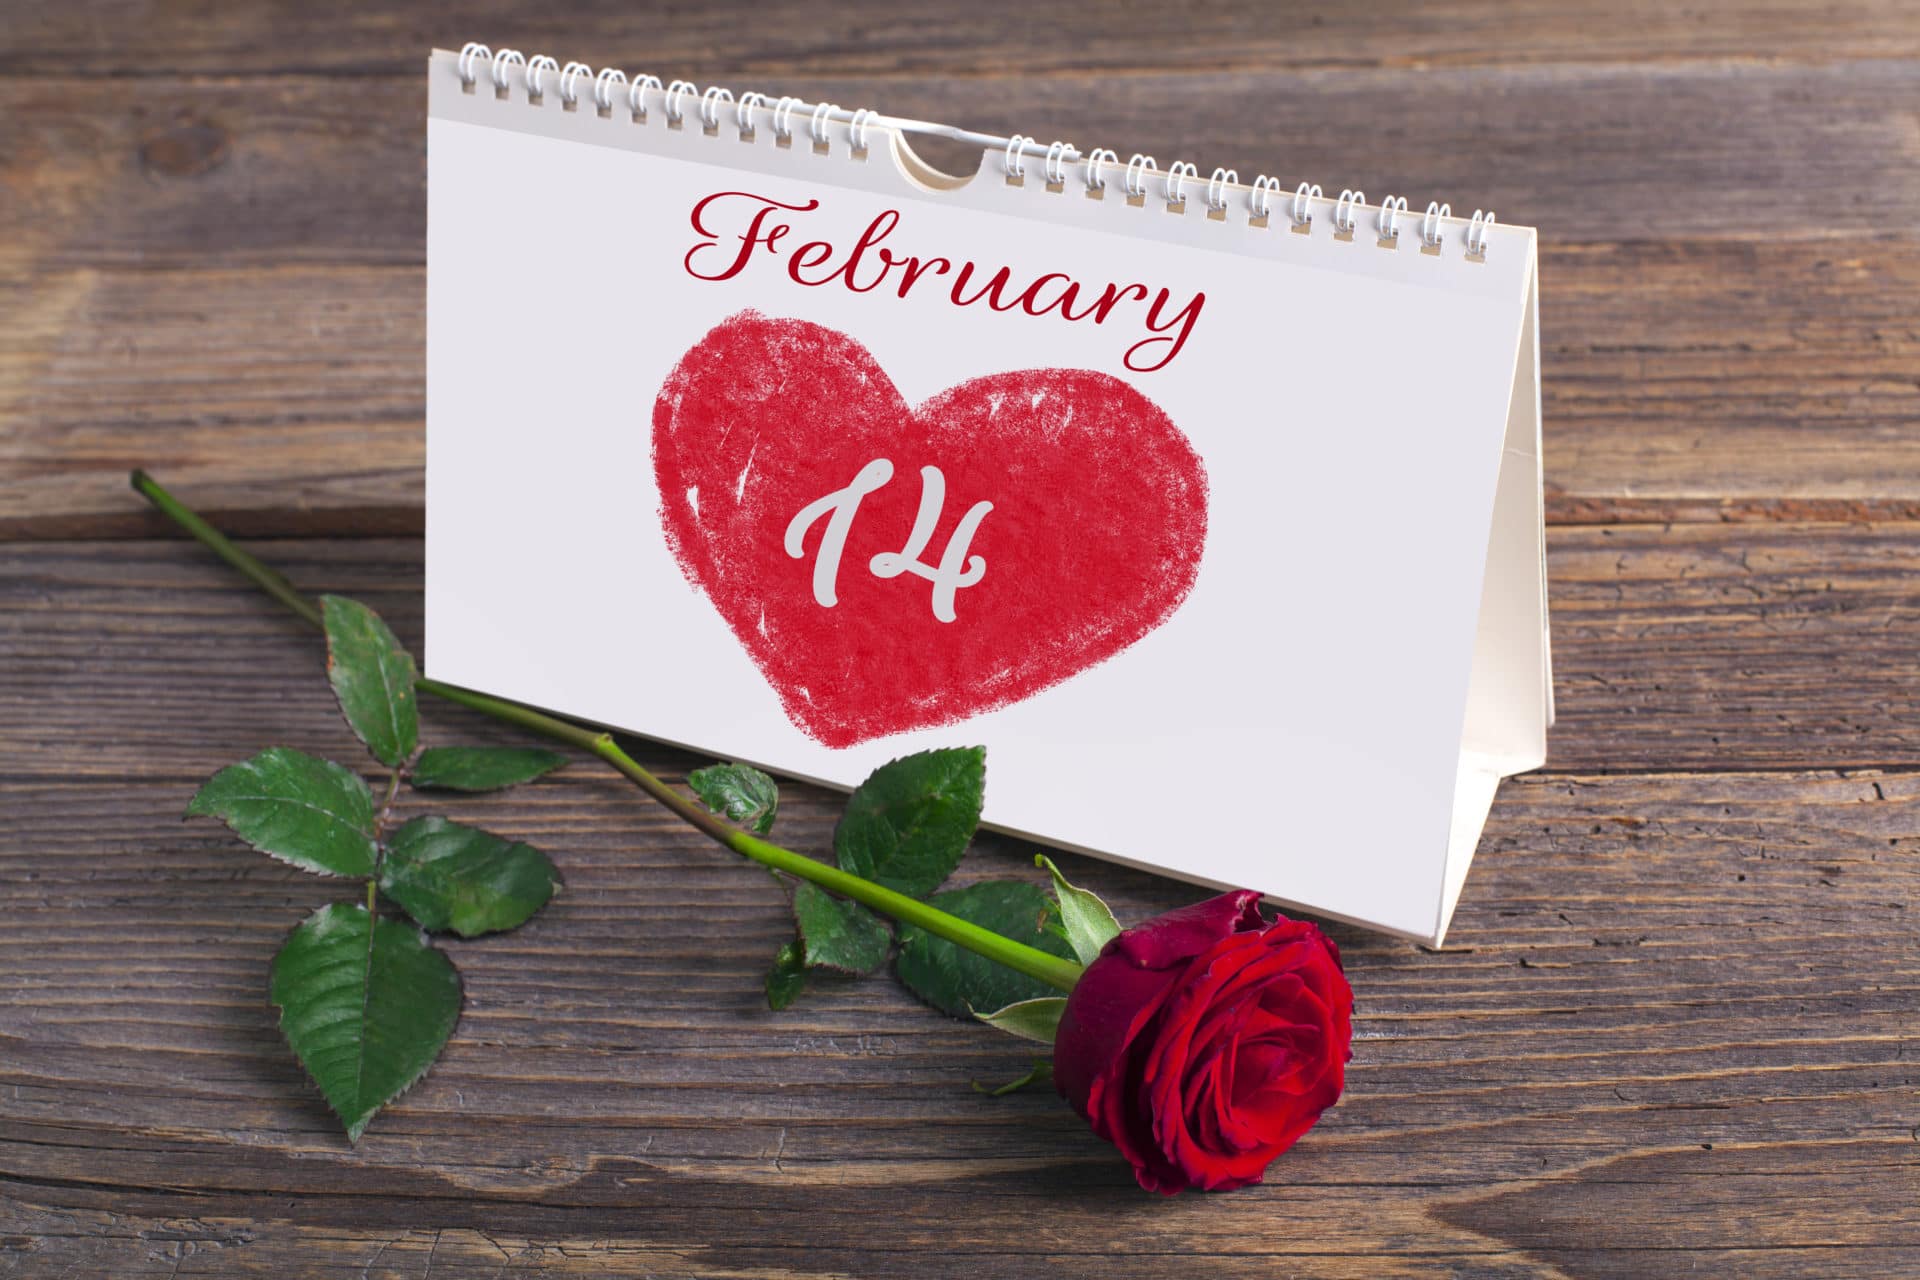 Día de San Valentín: historia, dónde se celebra, regalos